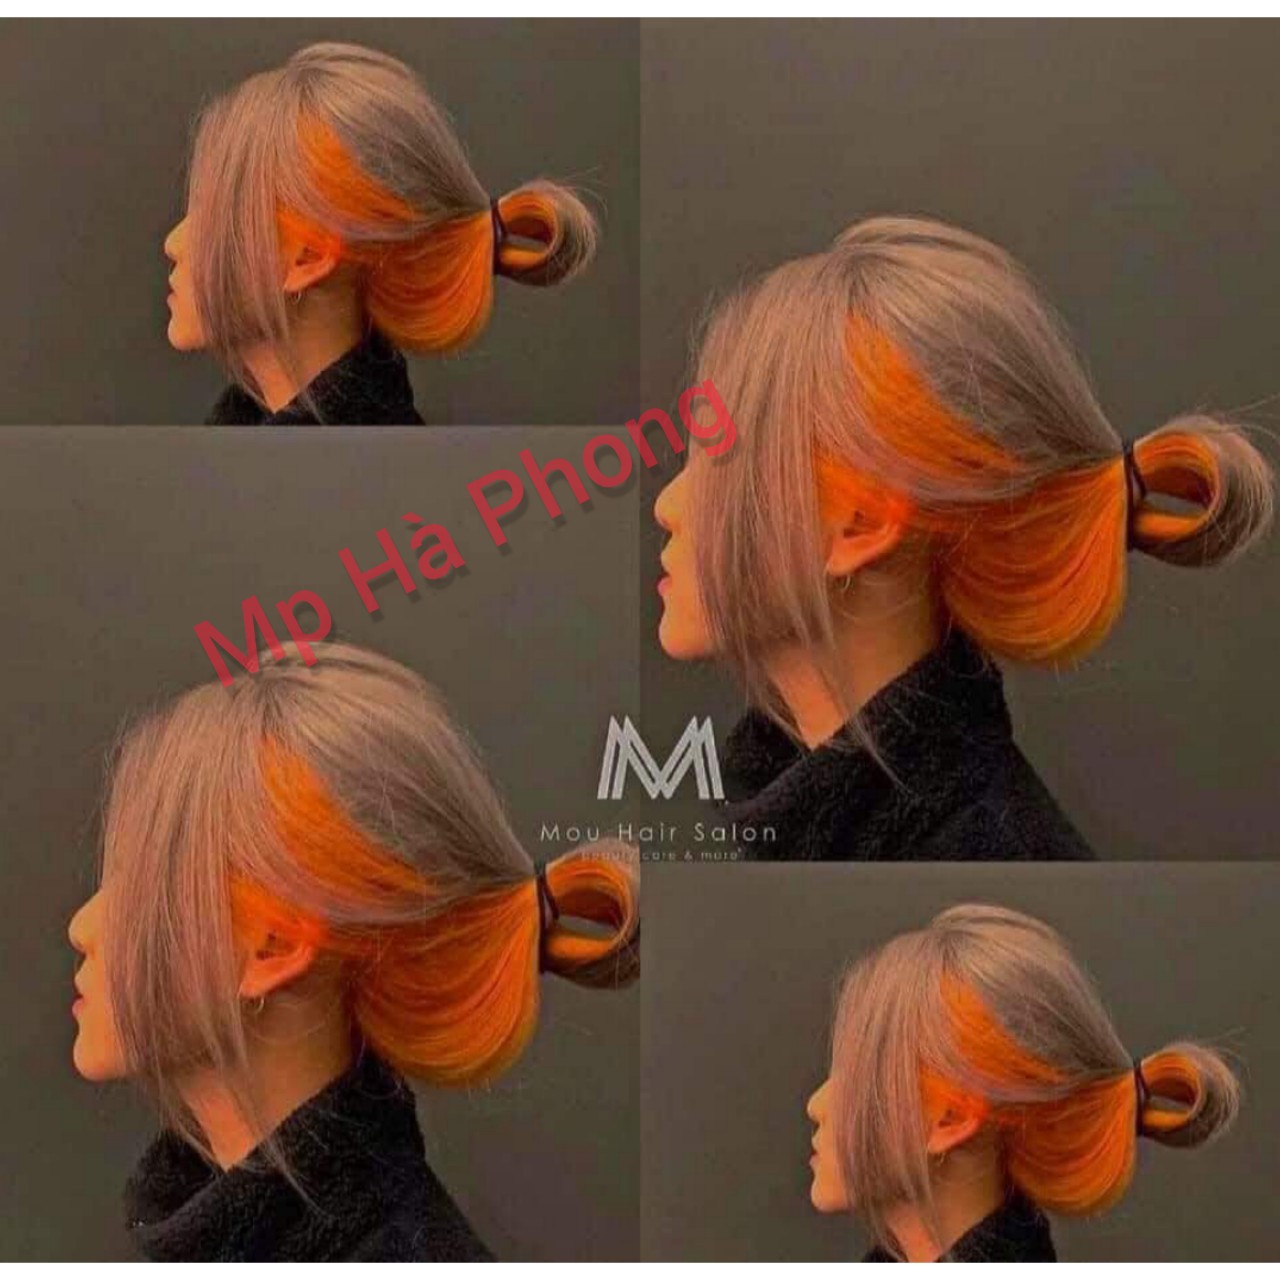 Hãy ngắm nhìn những kiểu tóc được nhuộm màu cam san hô, xanh dương và tím đầy sáng tạo và ấn tượng. Với những gam màu tươi sáng này, bạn sẽ tỏa sáng giữa đám đông và trở nên nổi bật hơn.